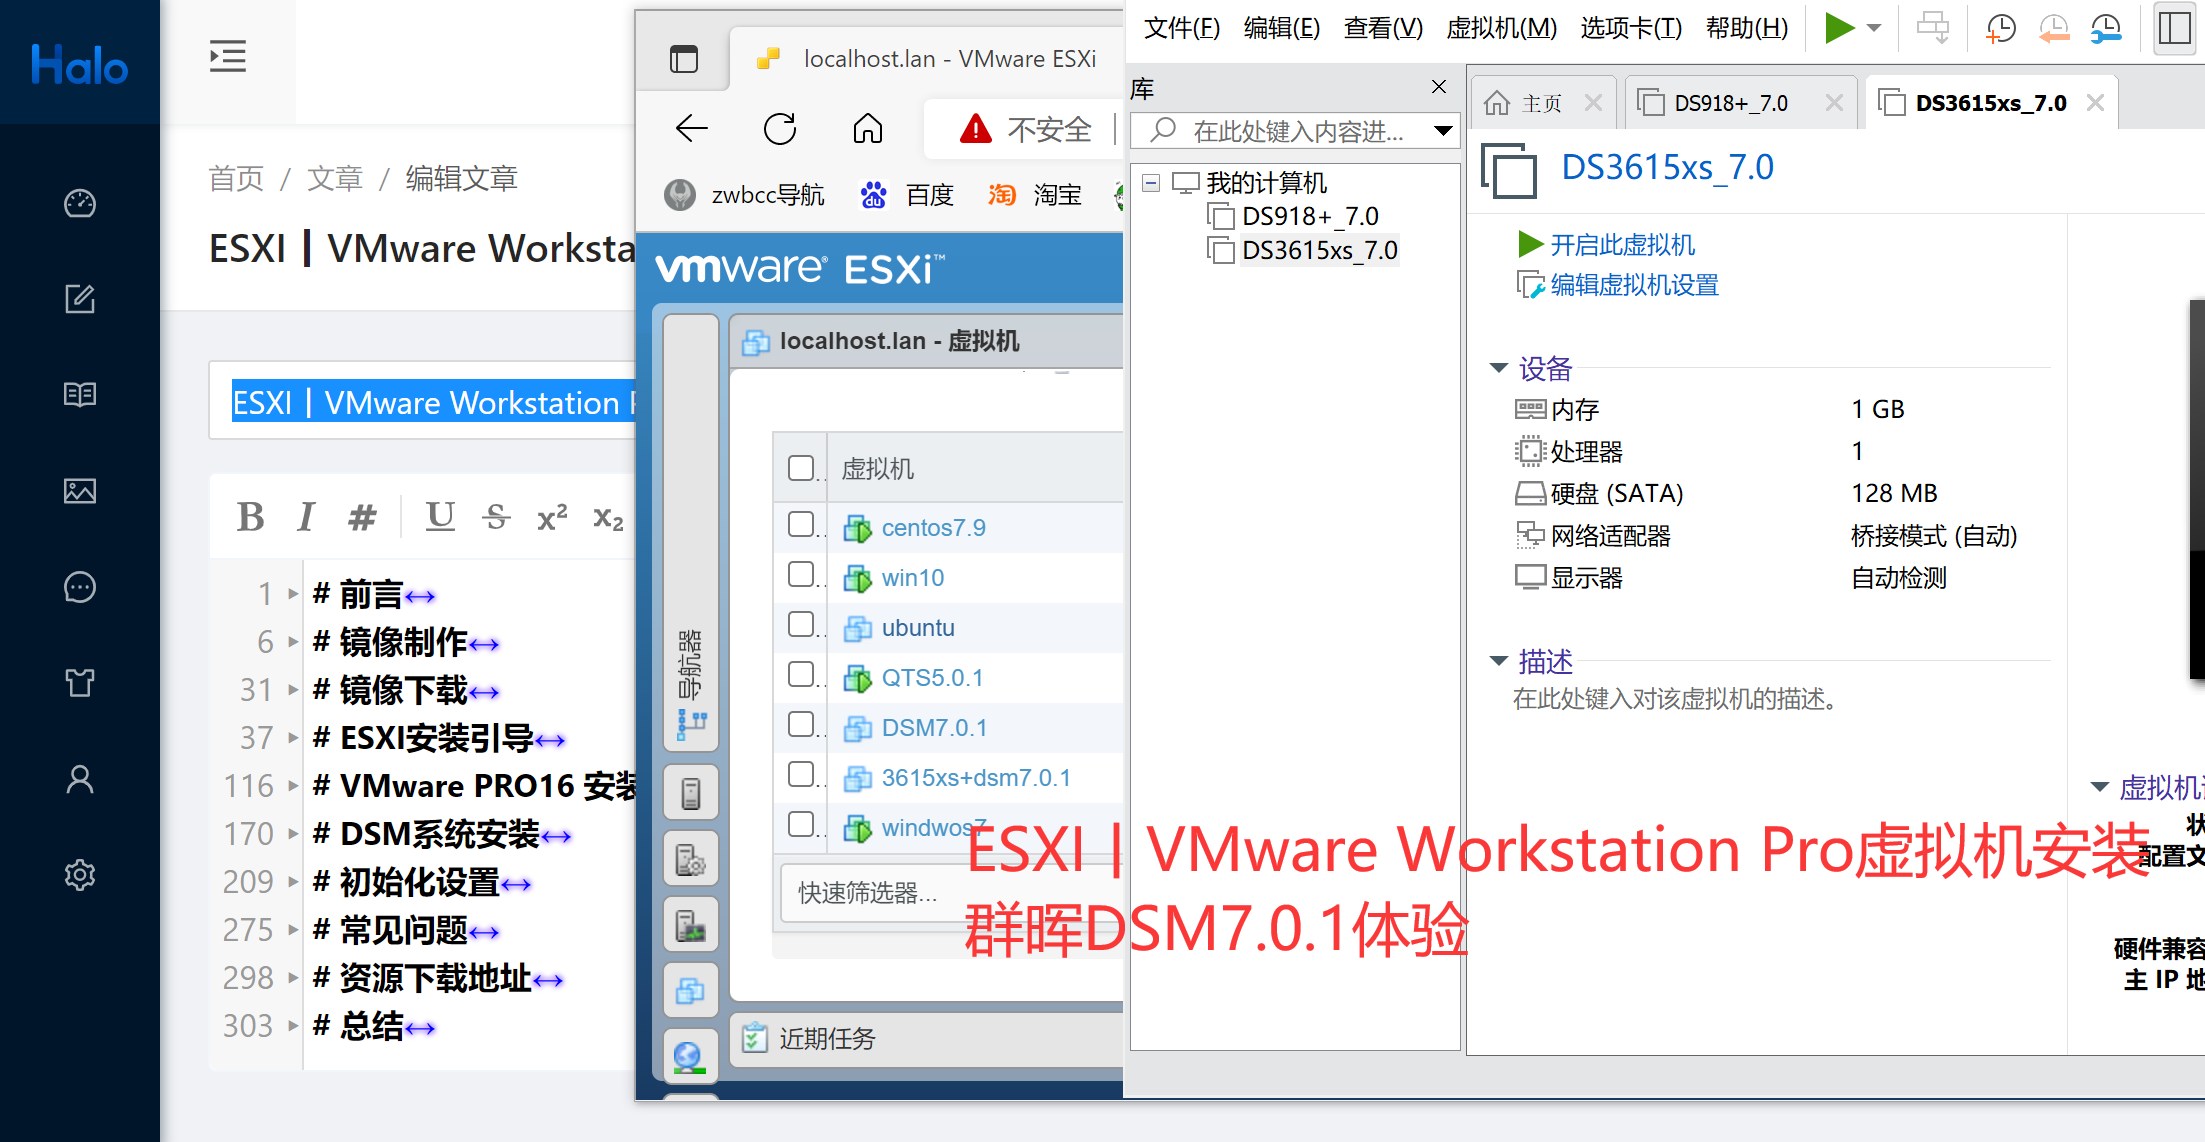 虚拟机安装群晖DSM7.0.1指南ESXI丨VMware Workstation Pro